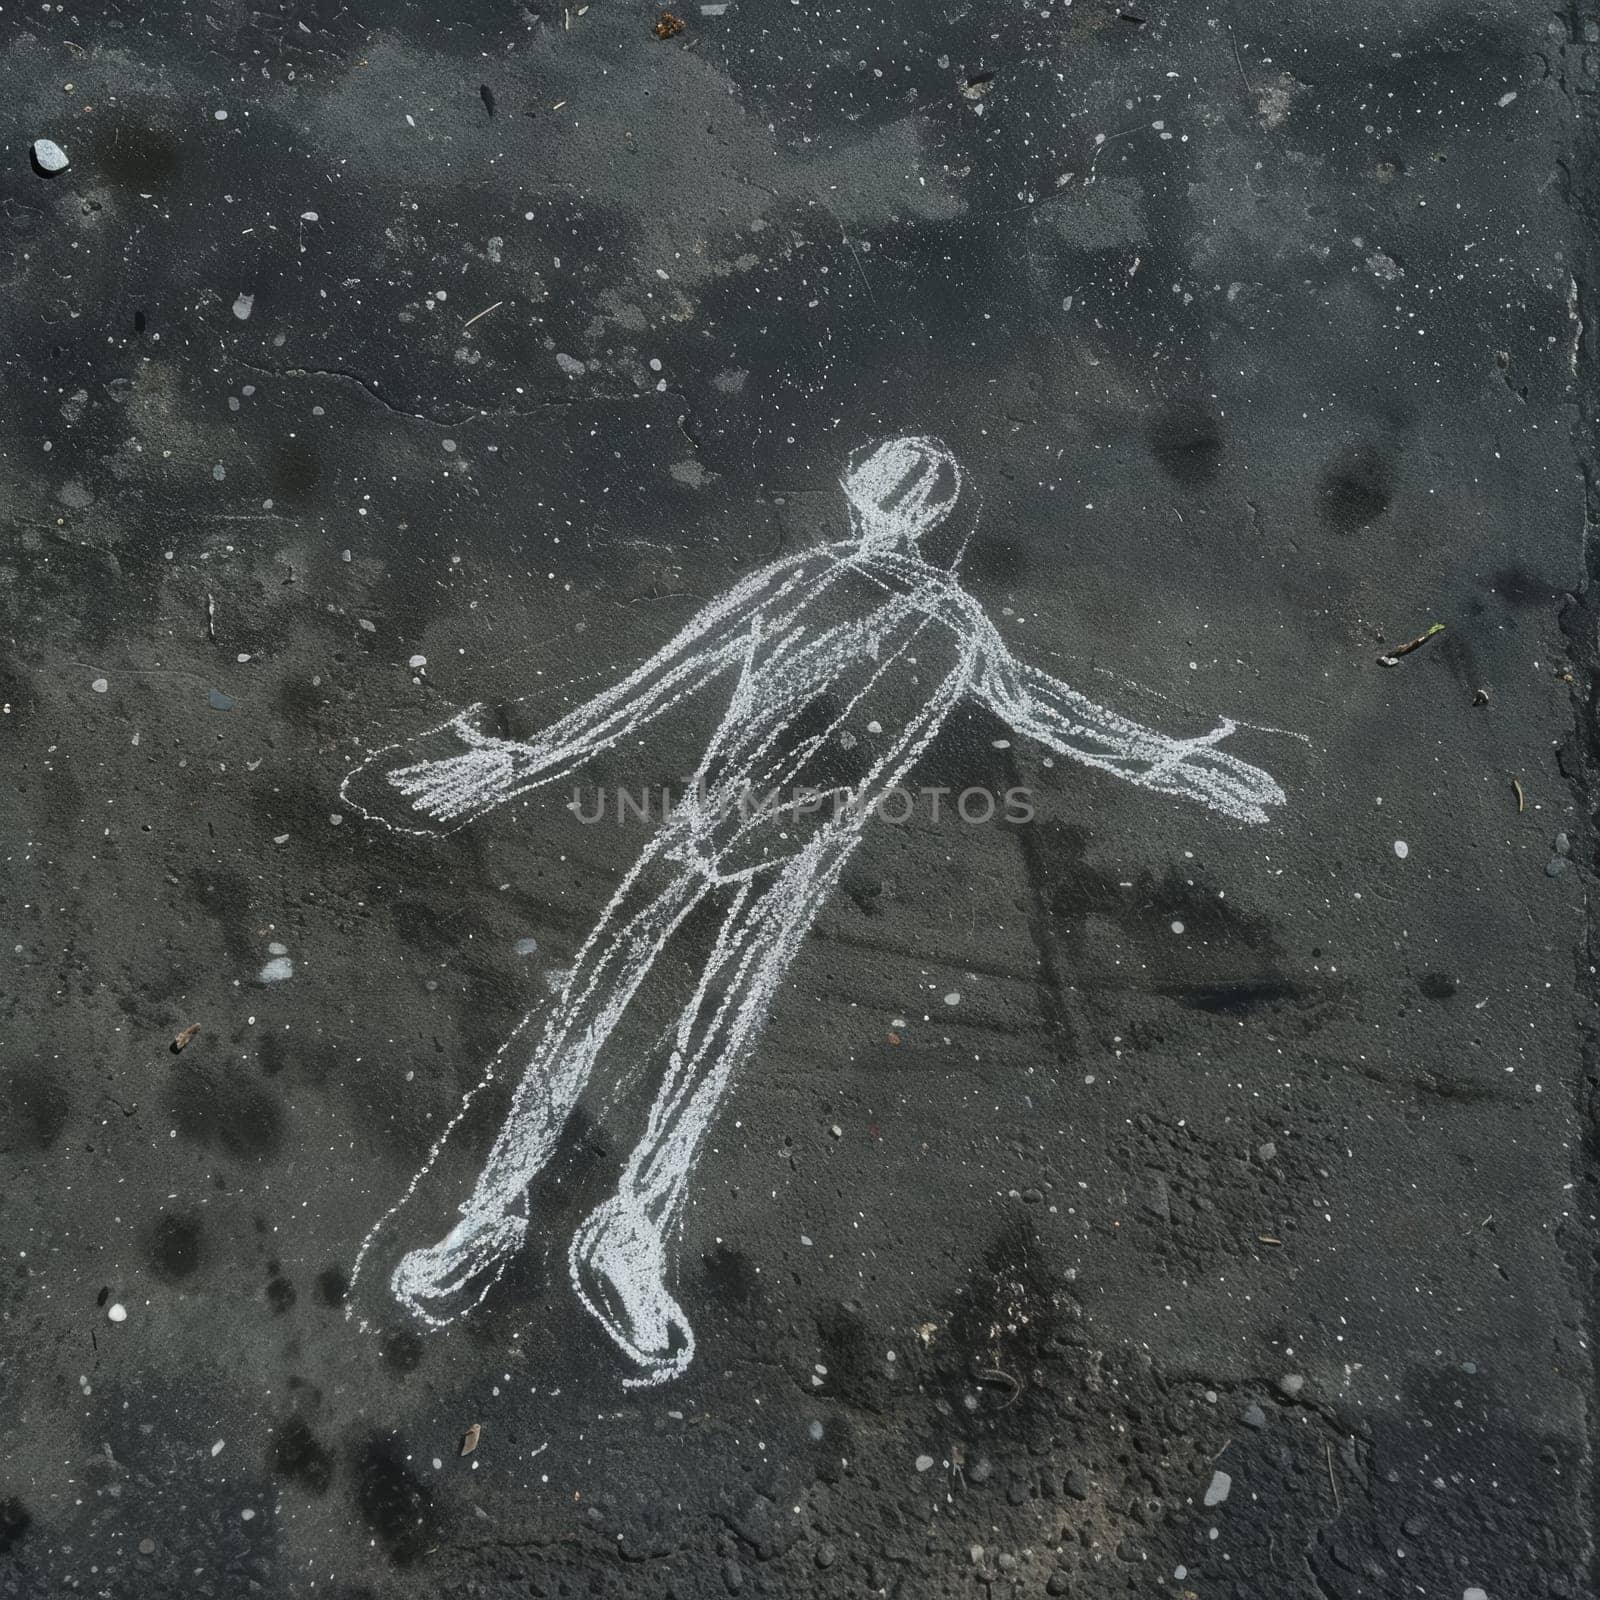 Chalk outline of a human figure on dark asphalt, reminiscent of a crime scene